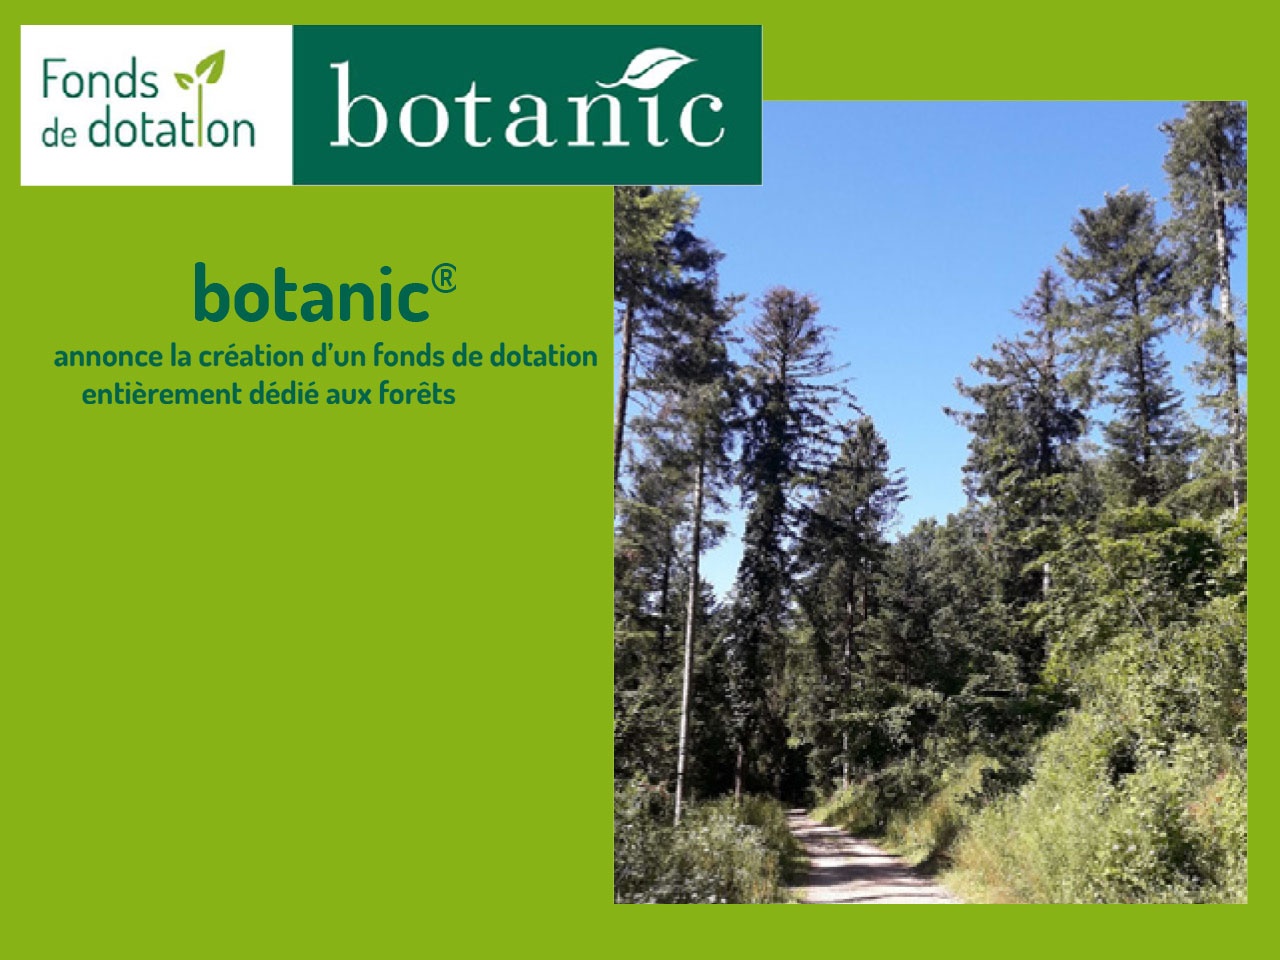 botanic® annonce la création d’un fonds de dotation entièrement dédié aux forêts